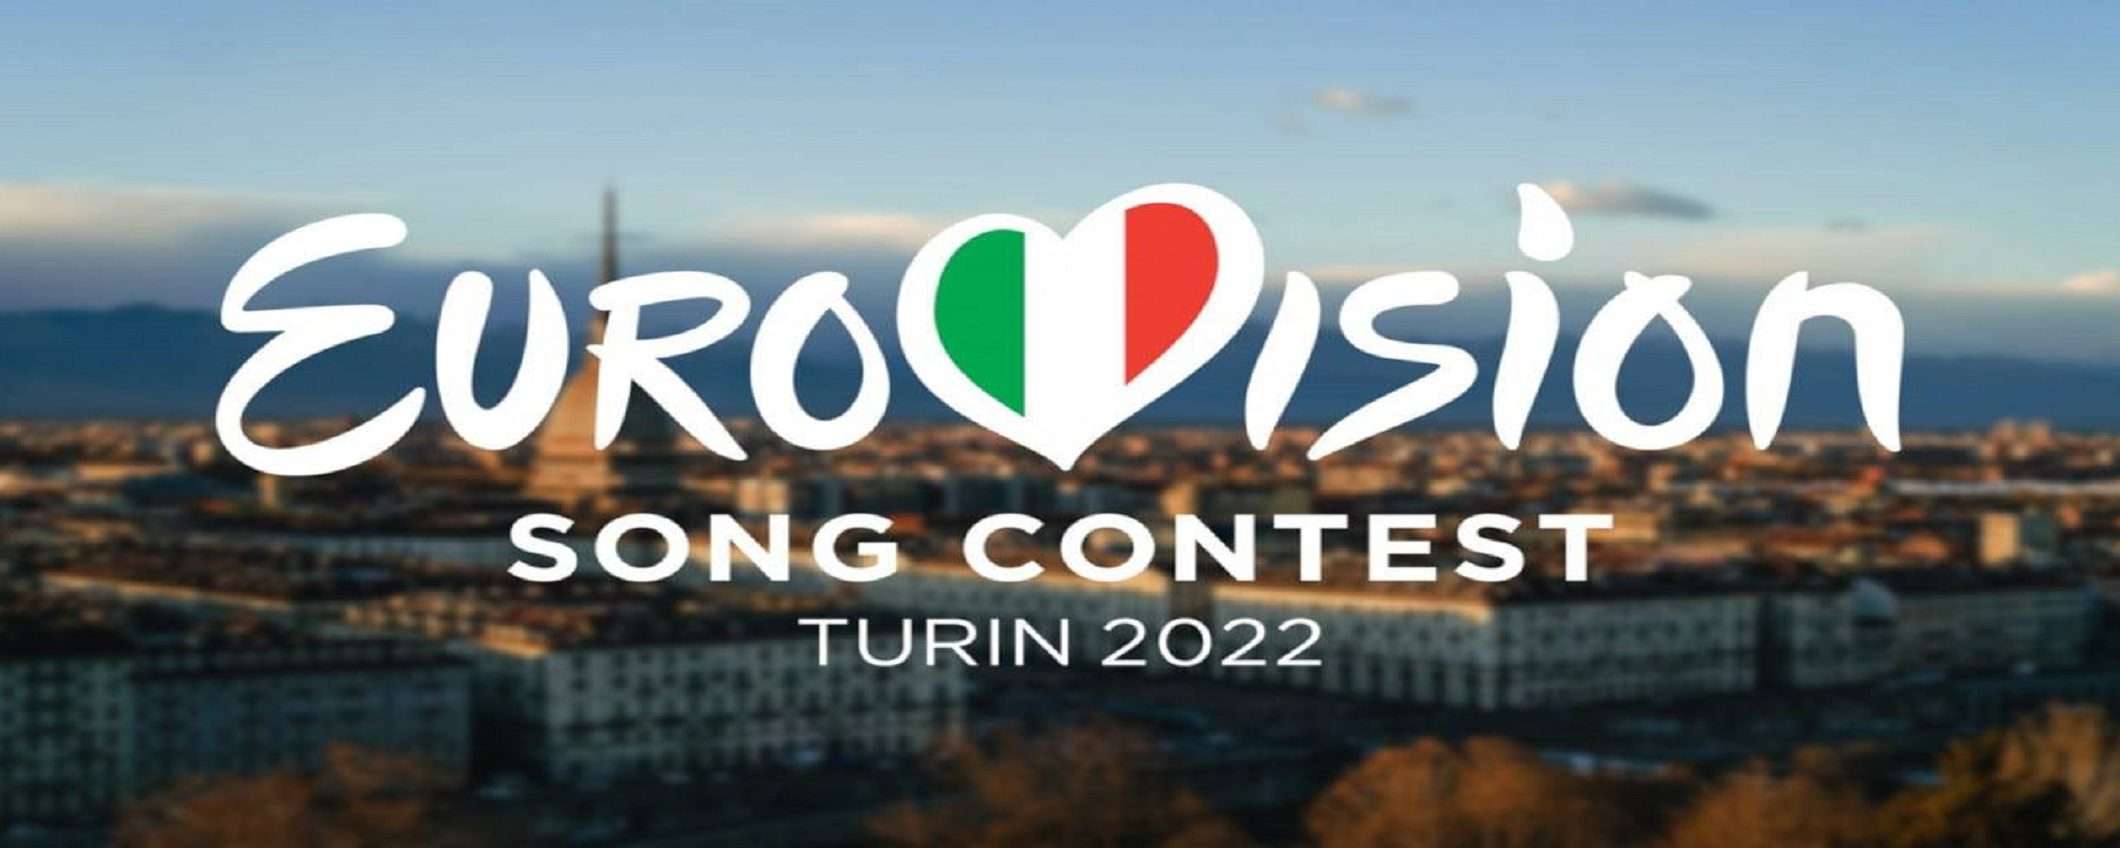 Eurovision 2022: come vederlo in streaming